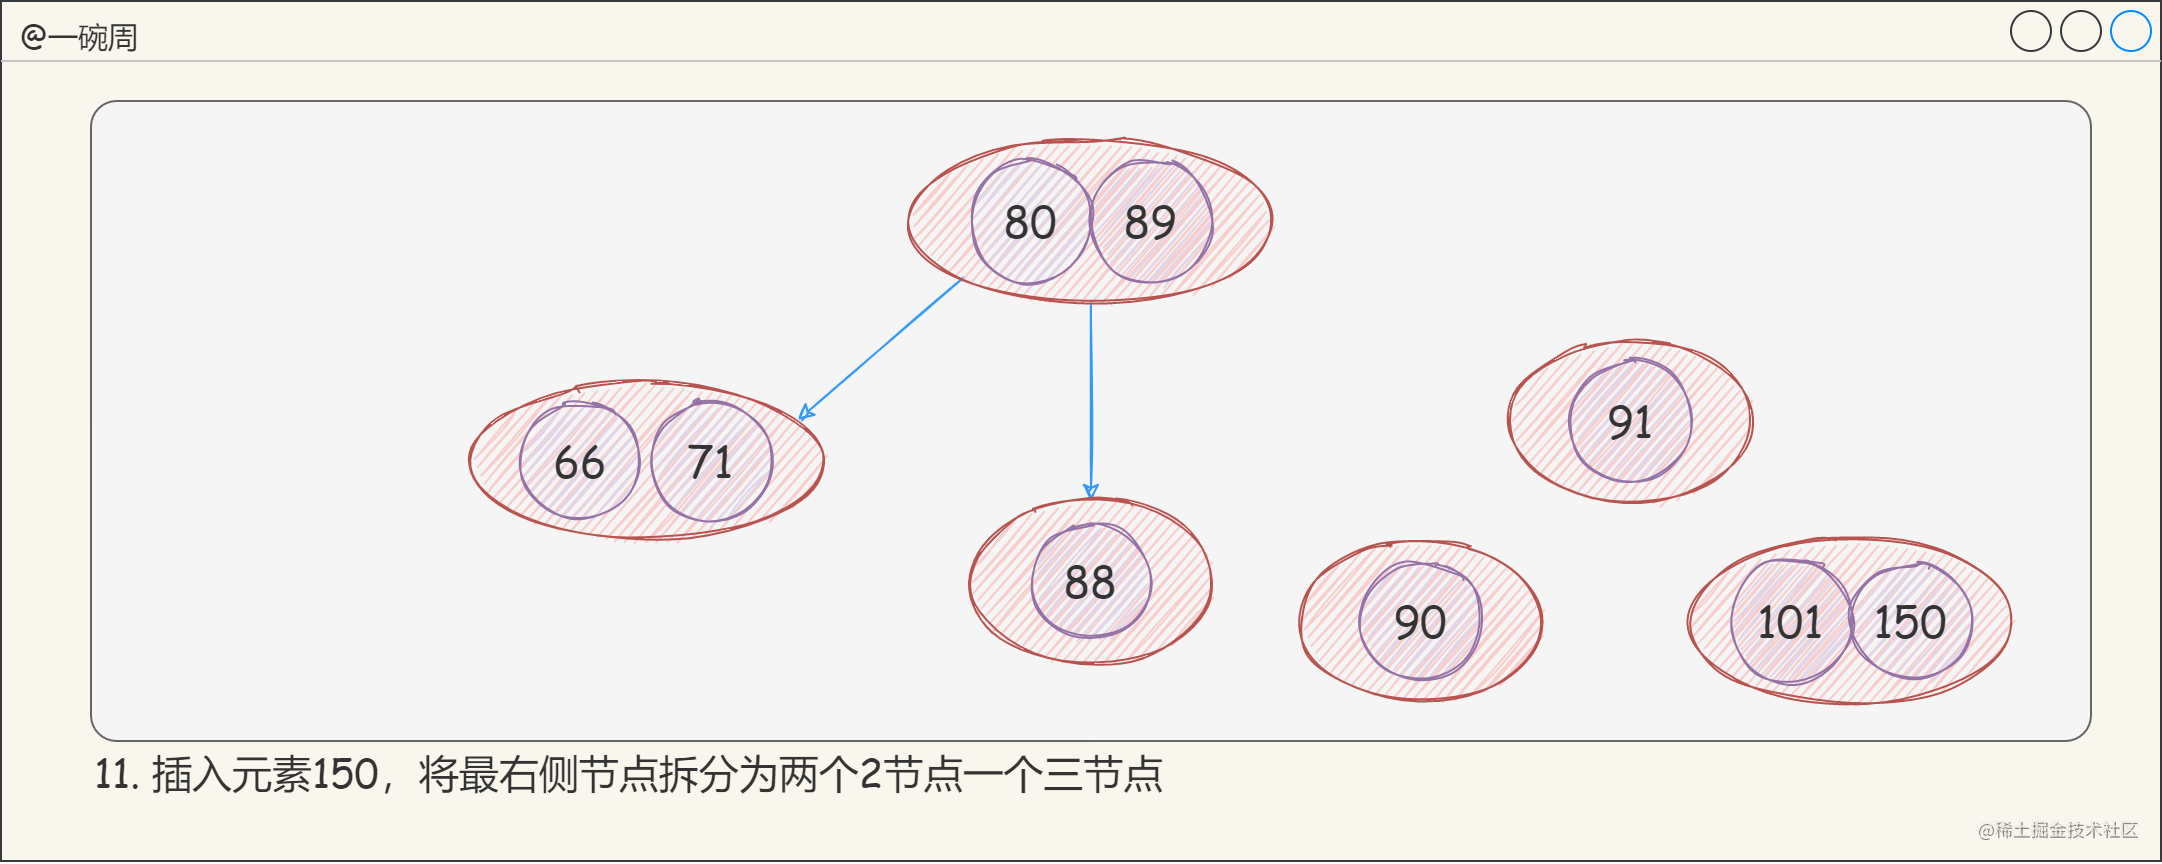 13_2-3-4树的构建过程7_1wN-tqJkoz.png